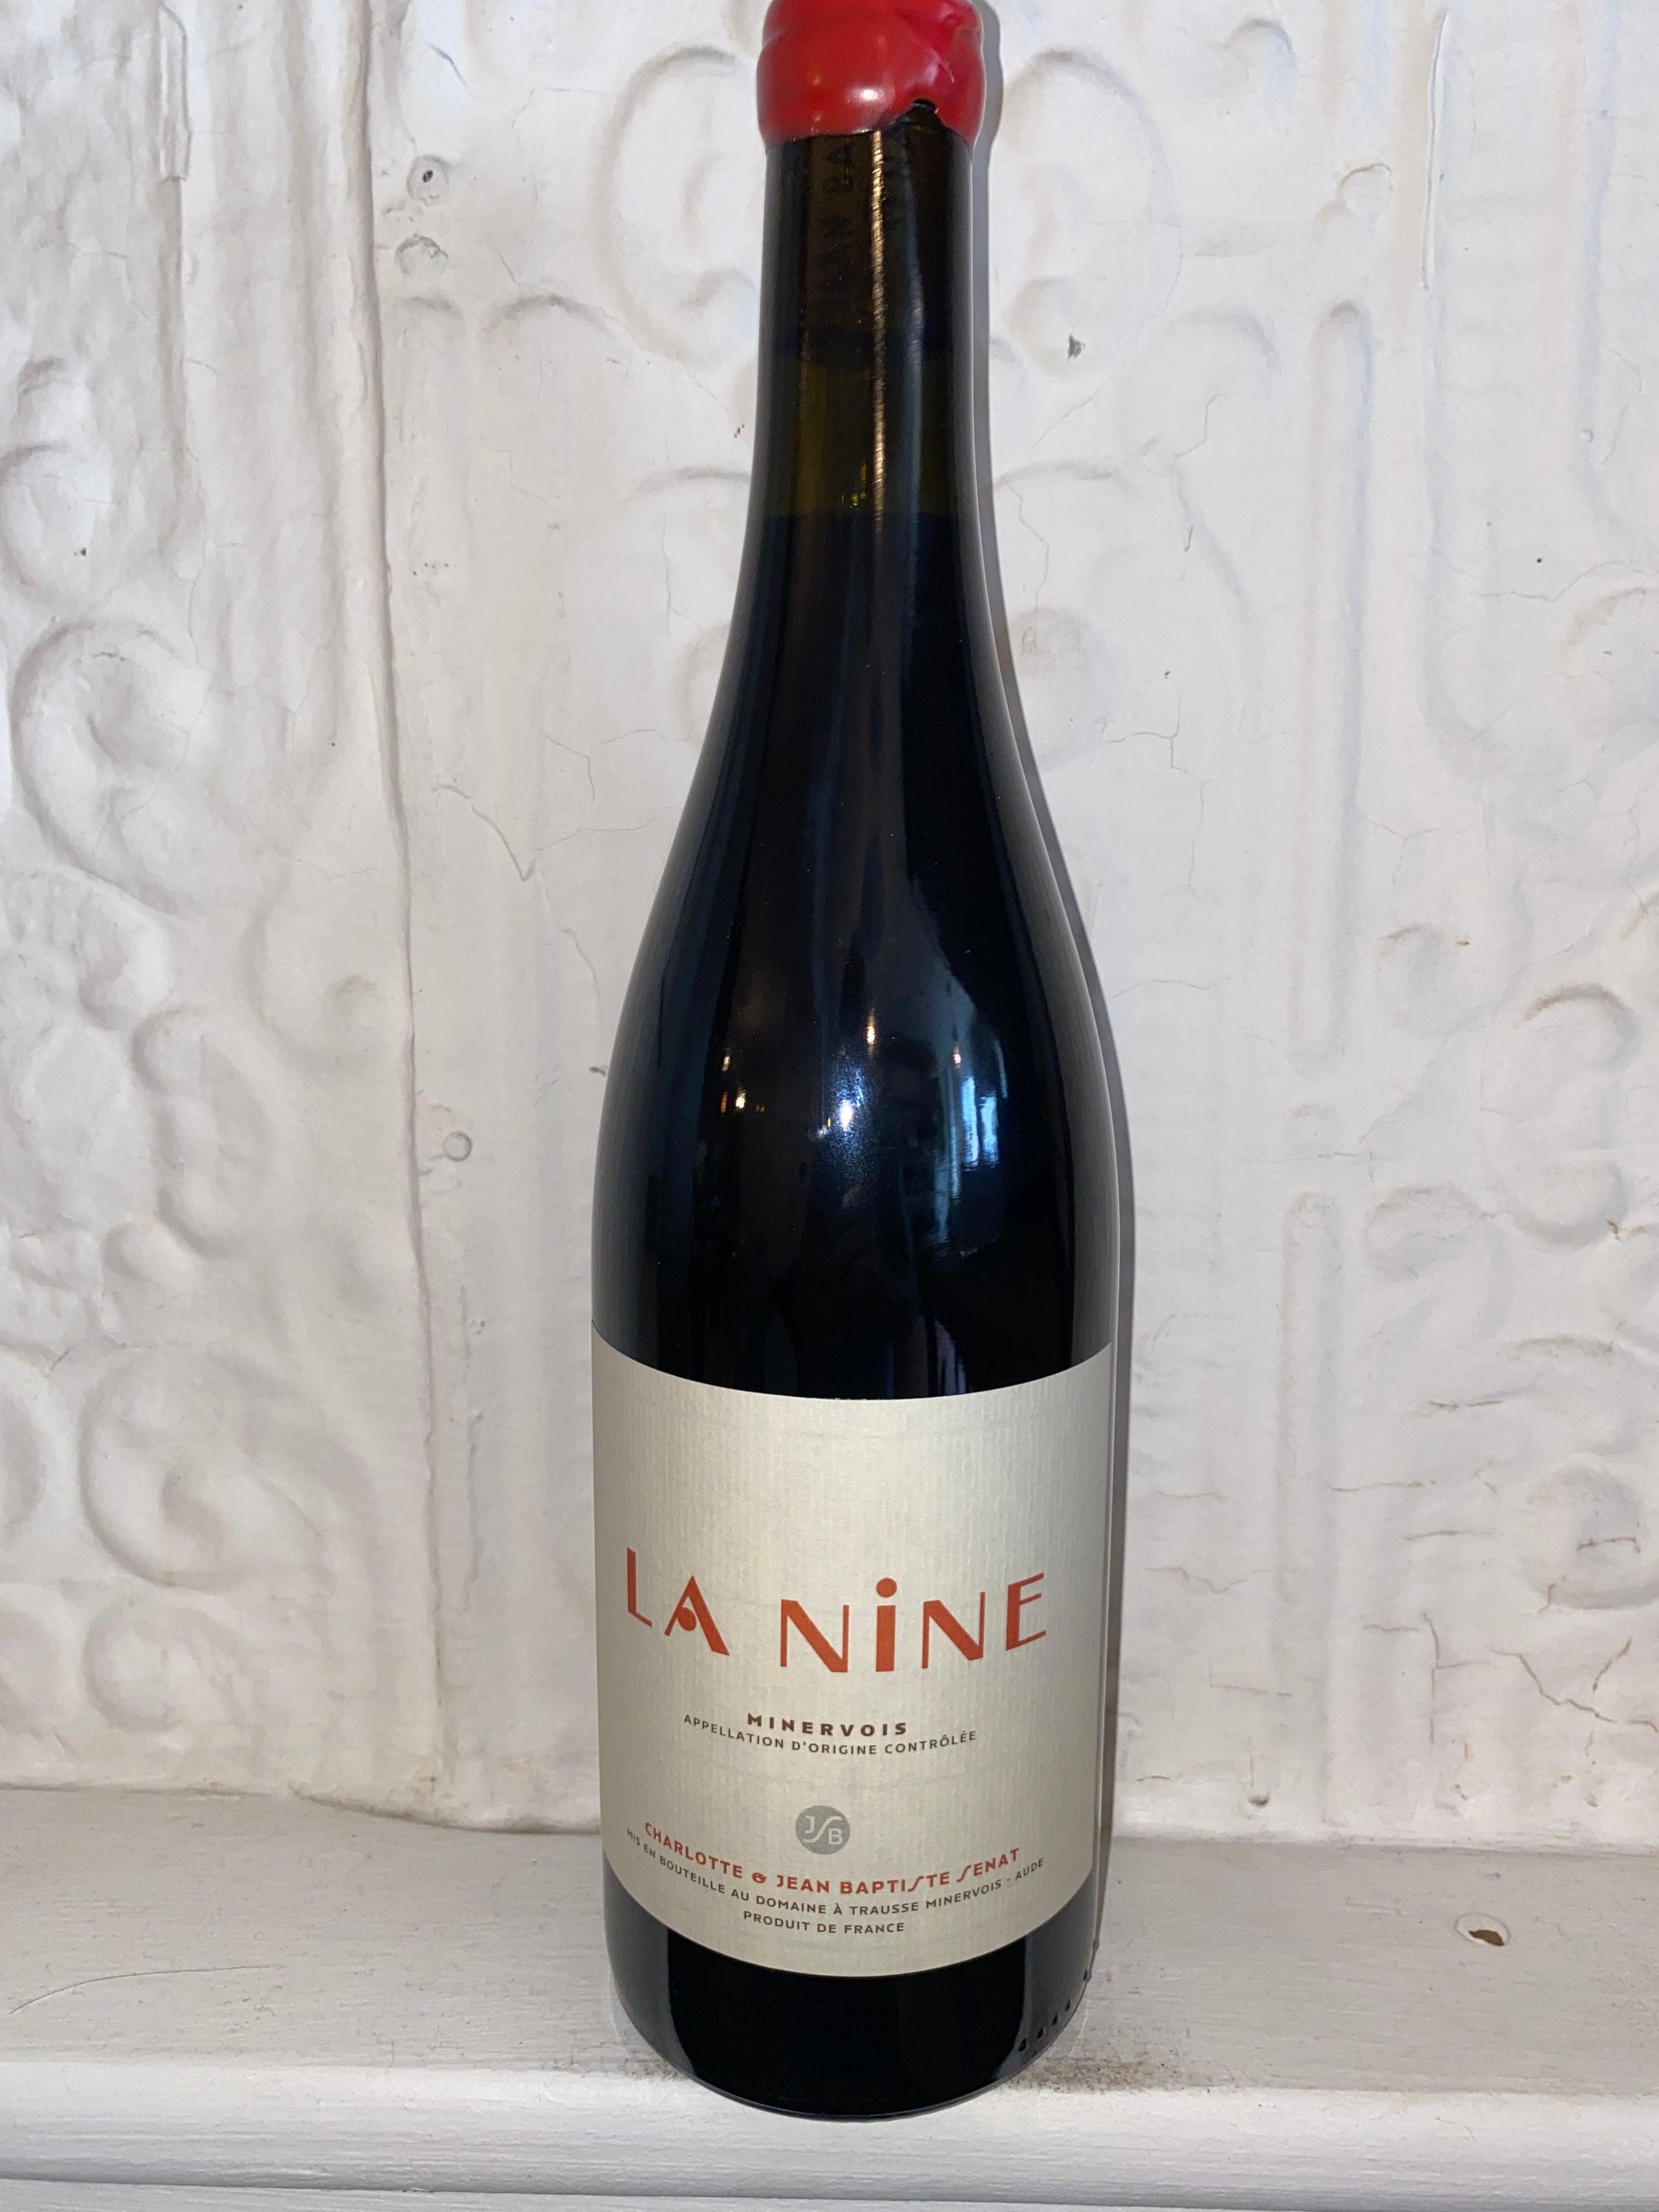 La Nine, Charlotte et Jean Baptiste Senat 2019 (Languedoc, France)-Wine-Bibber & Bell